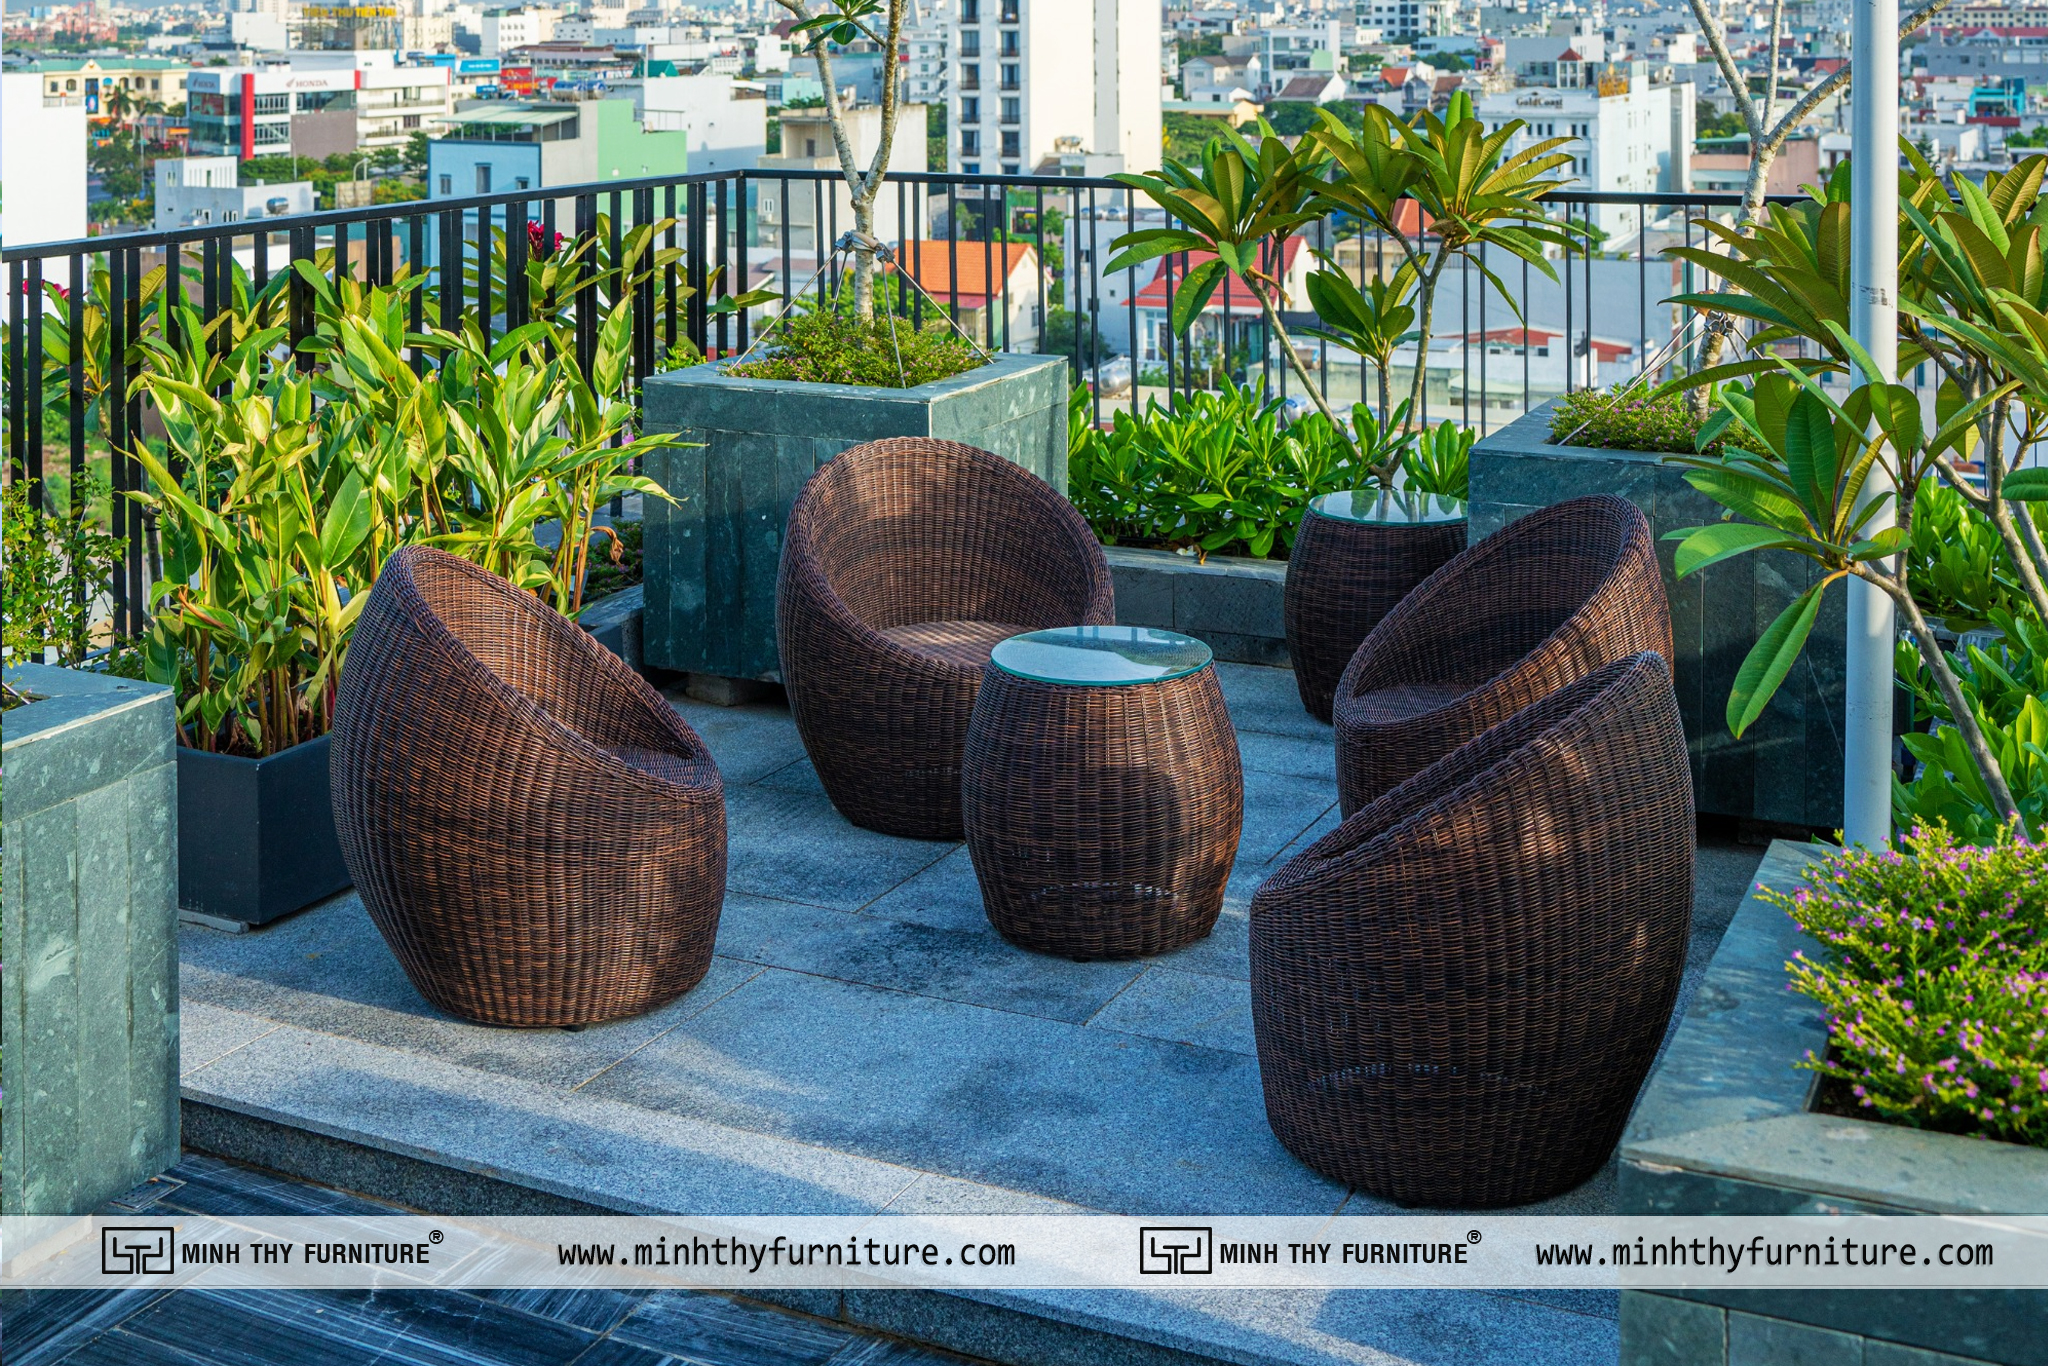 Tùy chọn mẫu bàn ghế ngoại trời phù hợp với không gian quán cafe sân vườn